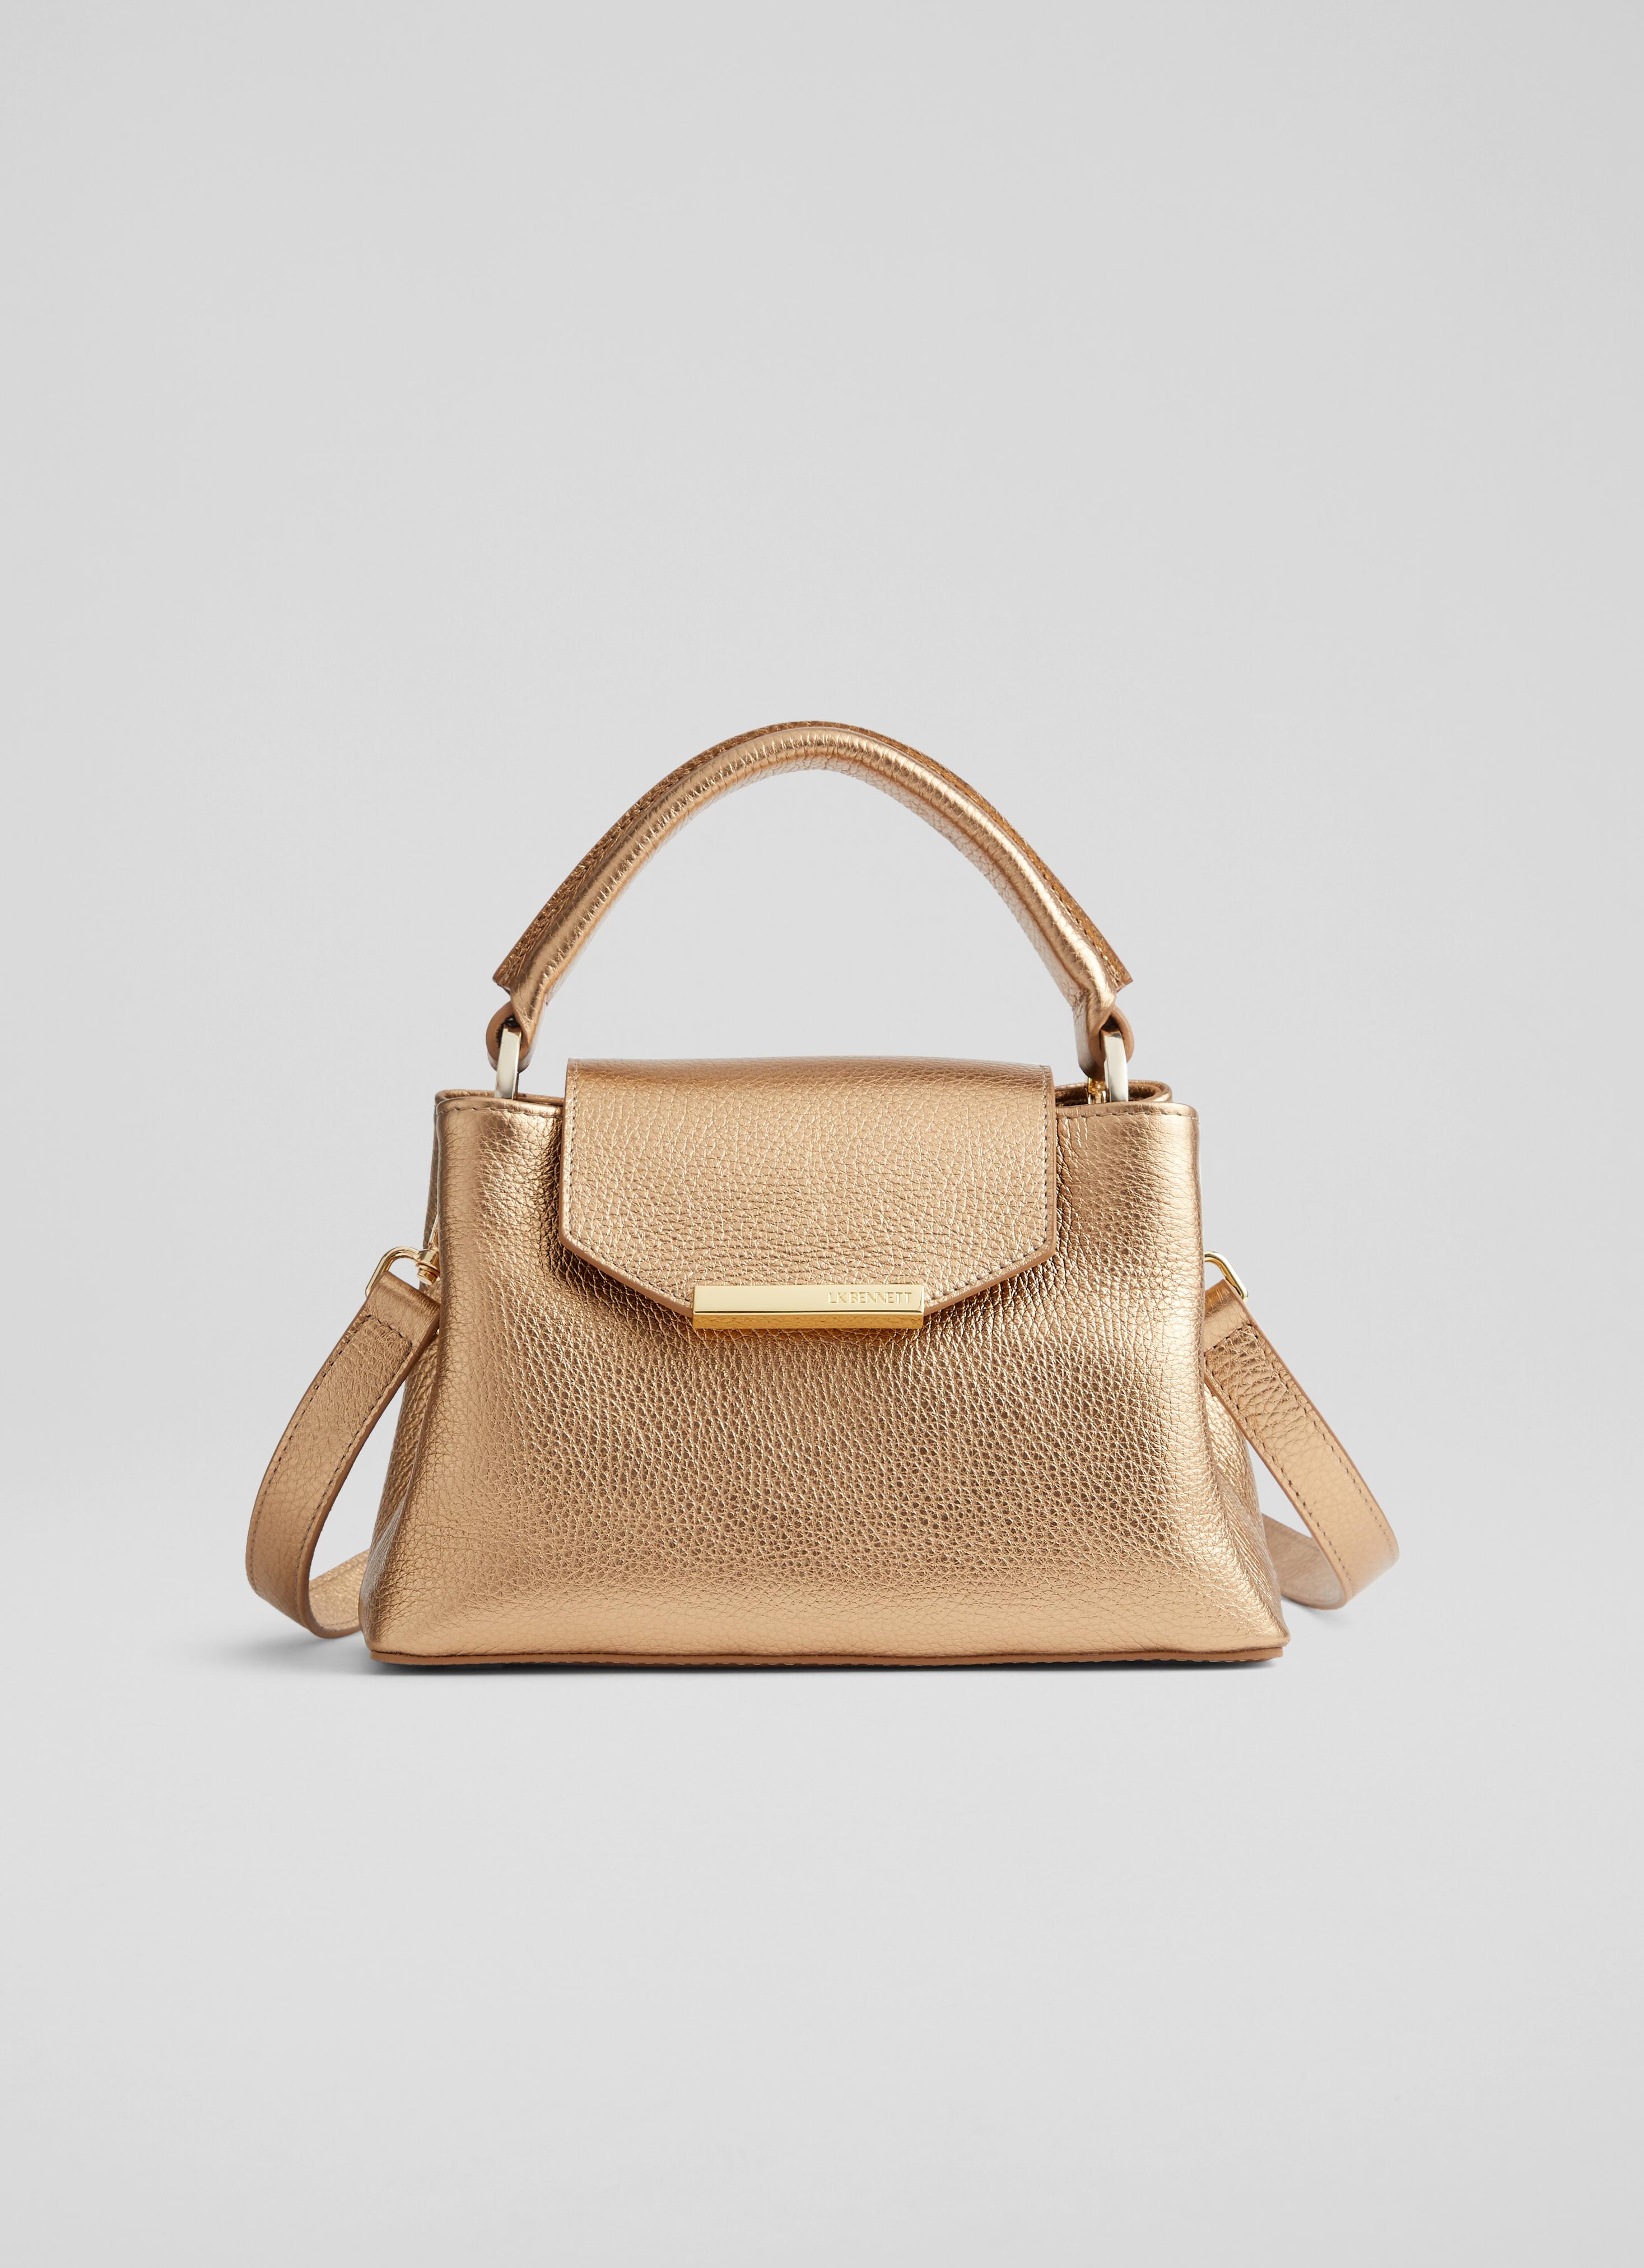 Rosamund Pike Launches LK Bennett Handbag Collection | British Vogue |  British Vogue